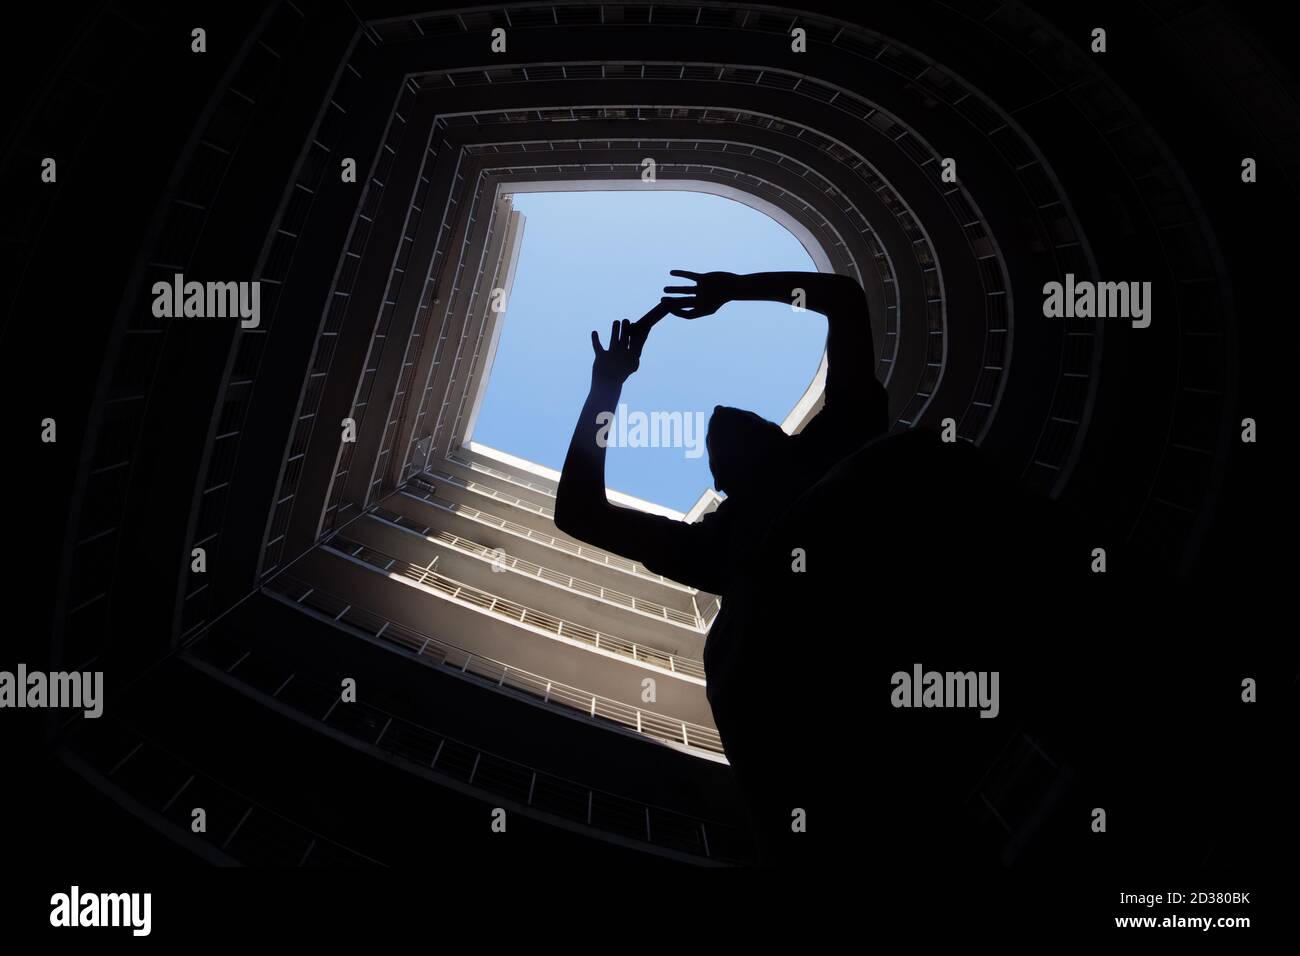 Le photographe prend la photo en arrière-plan sur un immense bâtiment moderne. Silhouette d'un homme tenant un téléphone portable pour prendre une photo. Tourisme en ville Banque D'Images